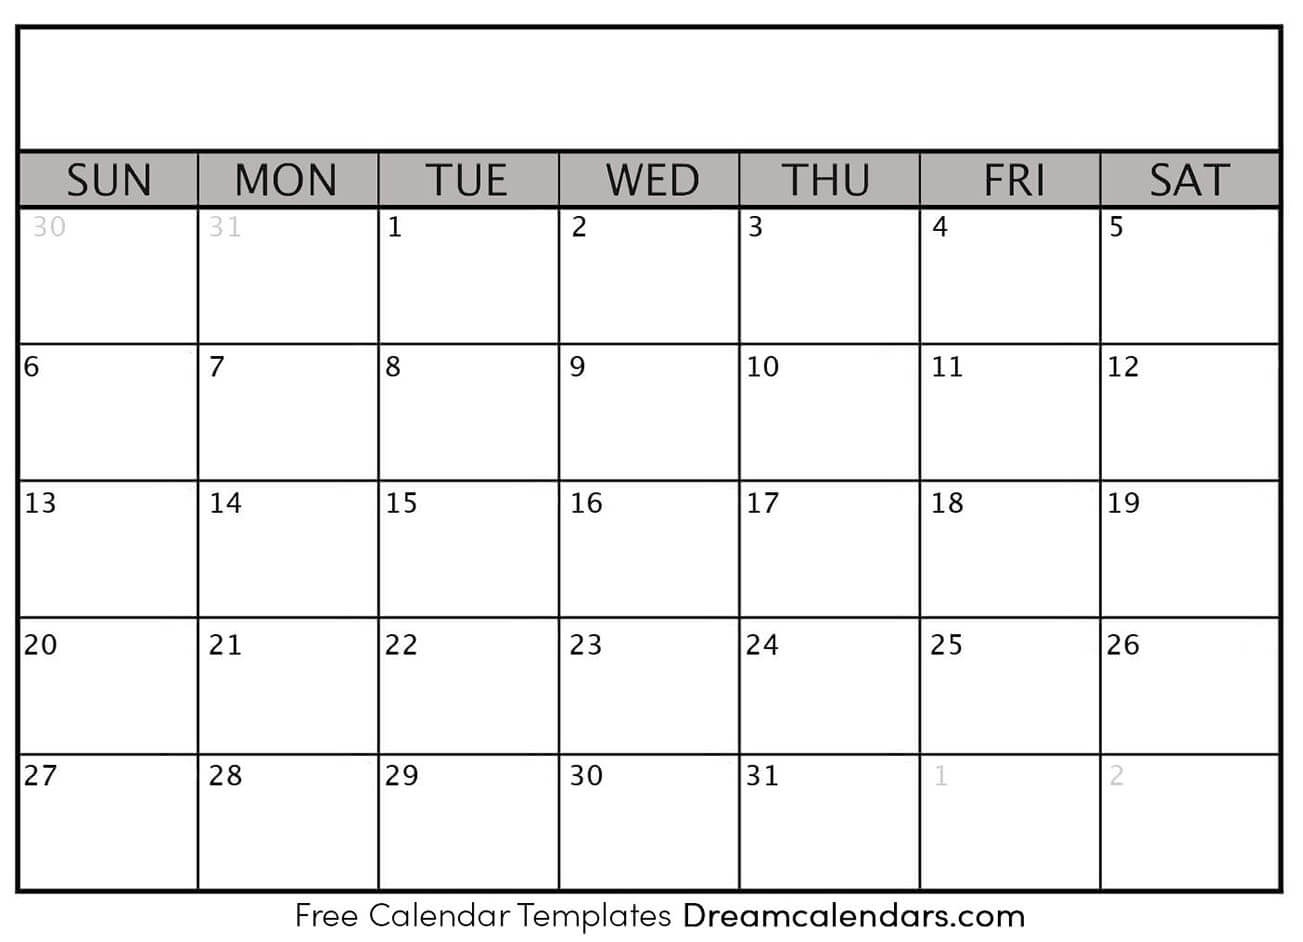 Printable Blank Calendar 2020 | Dream Calendars Blank Outlook Calendar 2020 With Week Numbers